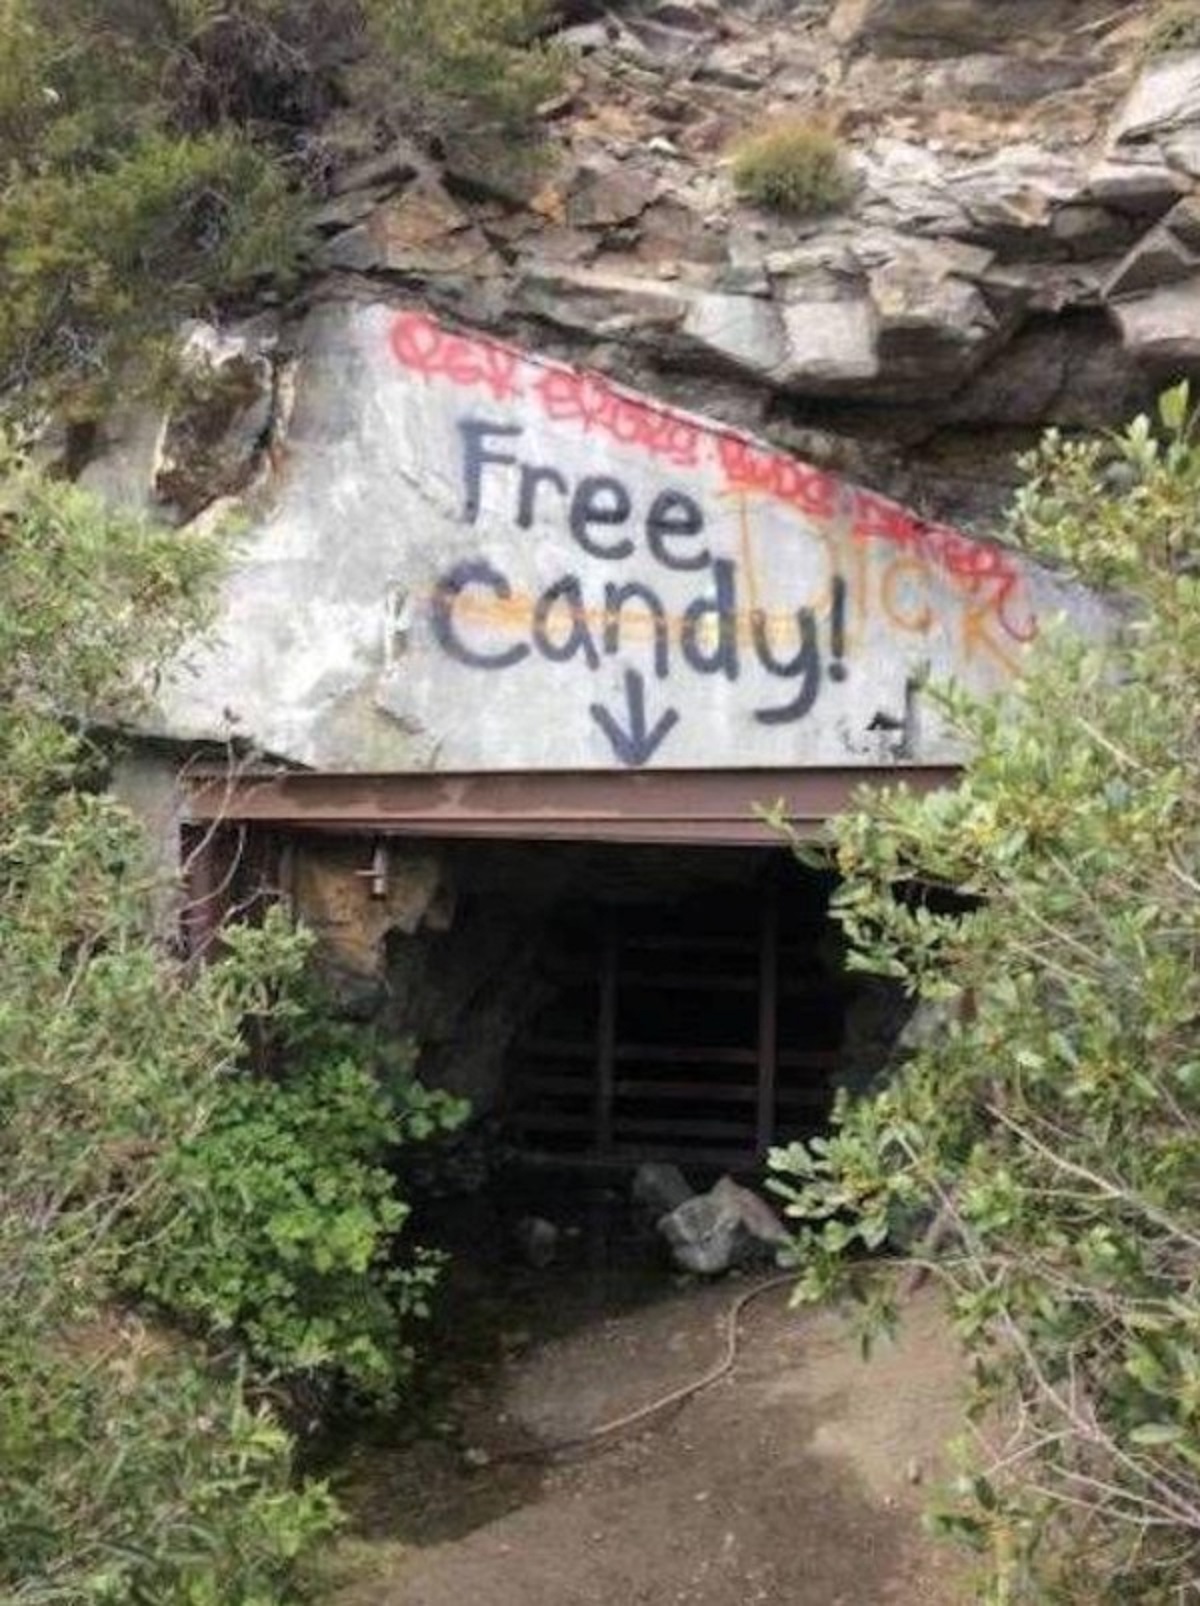 Graffiti - Free Candy!